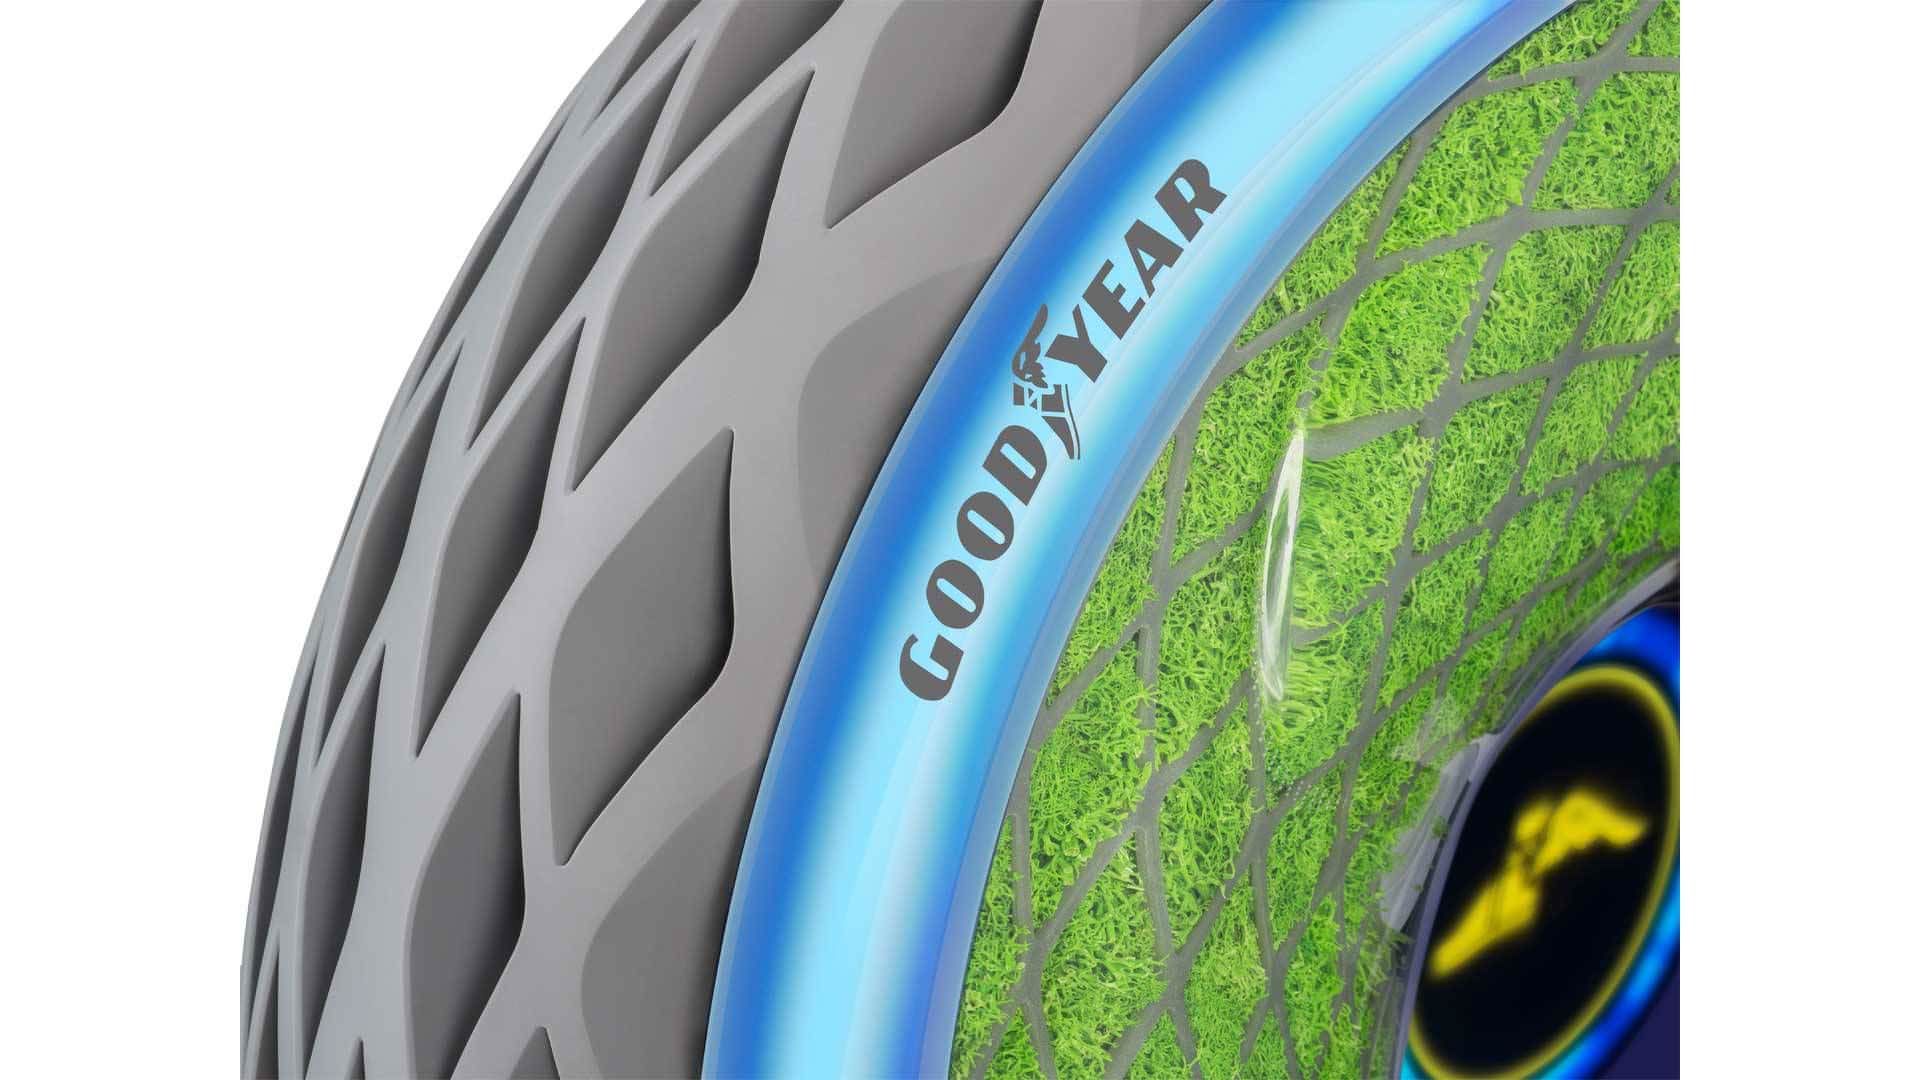 مرجع متخصصين ايران Goodyear Concept Tire / تاير مفهومي گودير